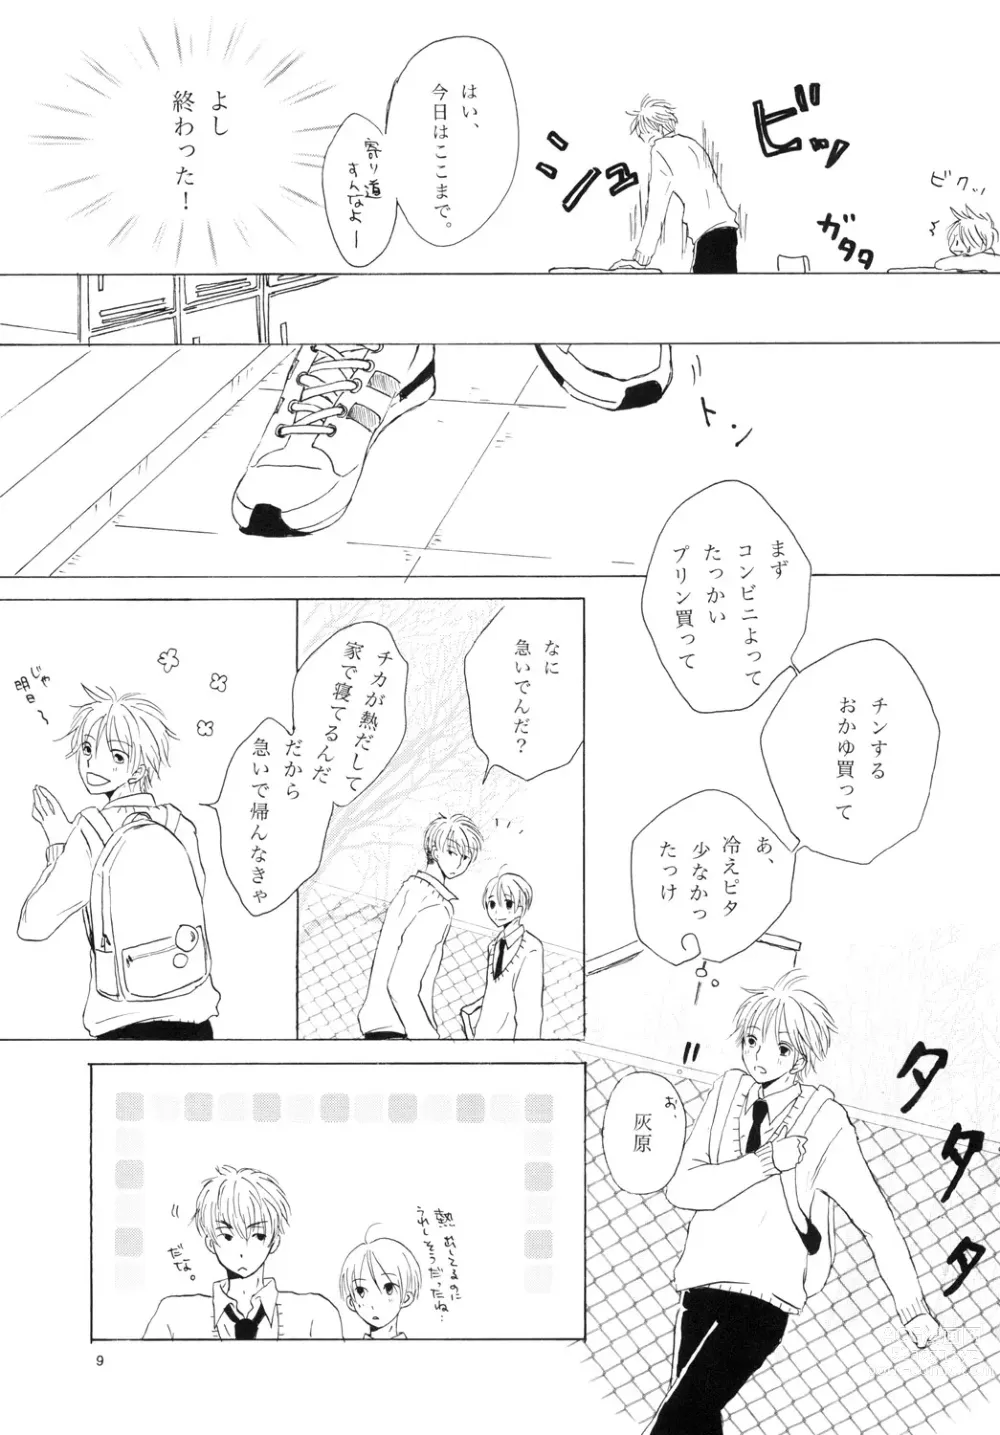 Page 9 of doujinshi Doushita no Chika-chan？